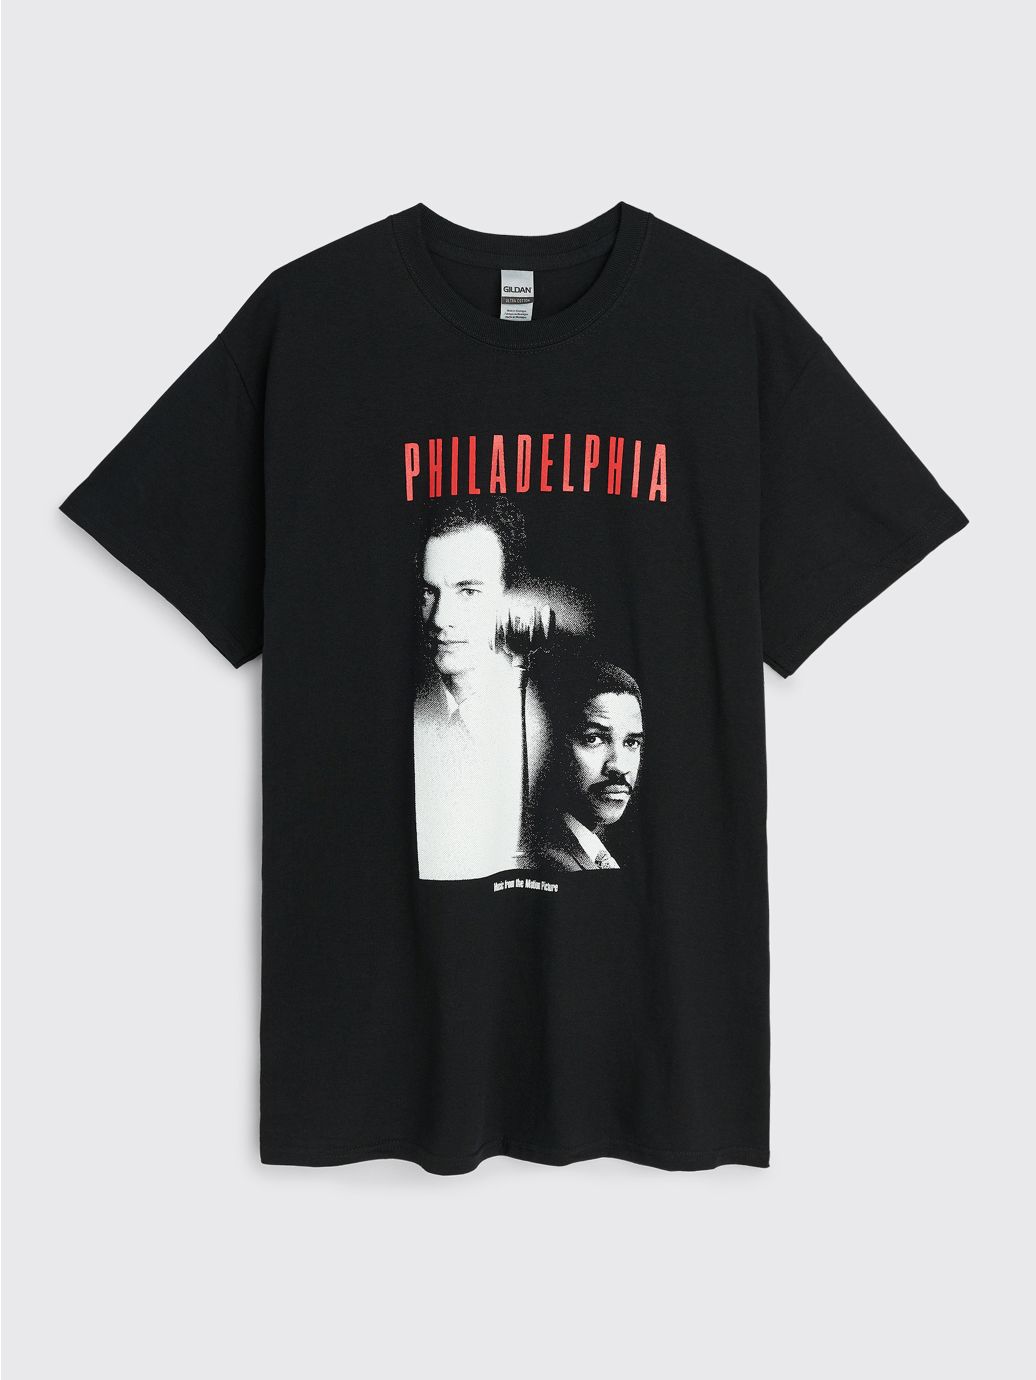 undefined | Fraser Croll Street Of Philadelphia T-shirt Black